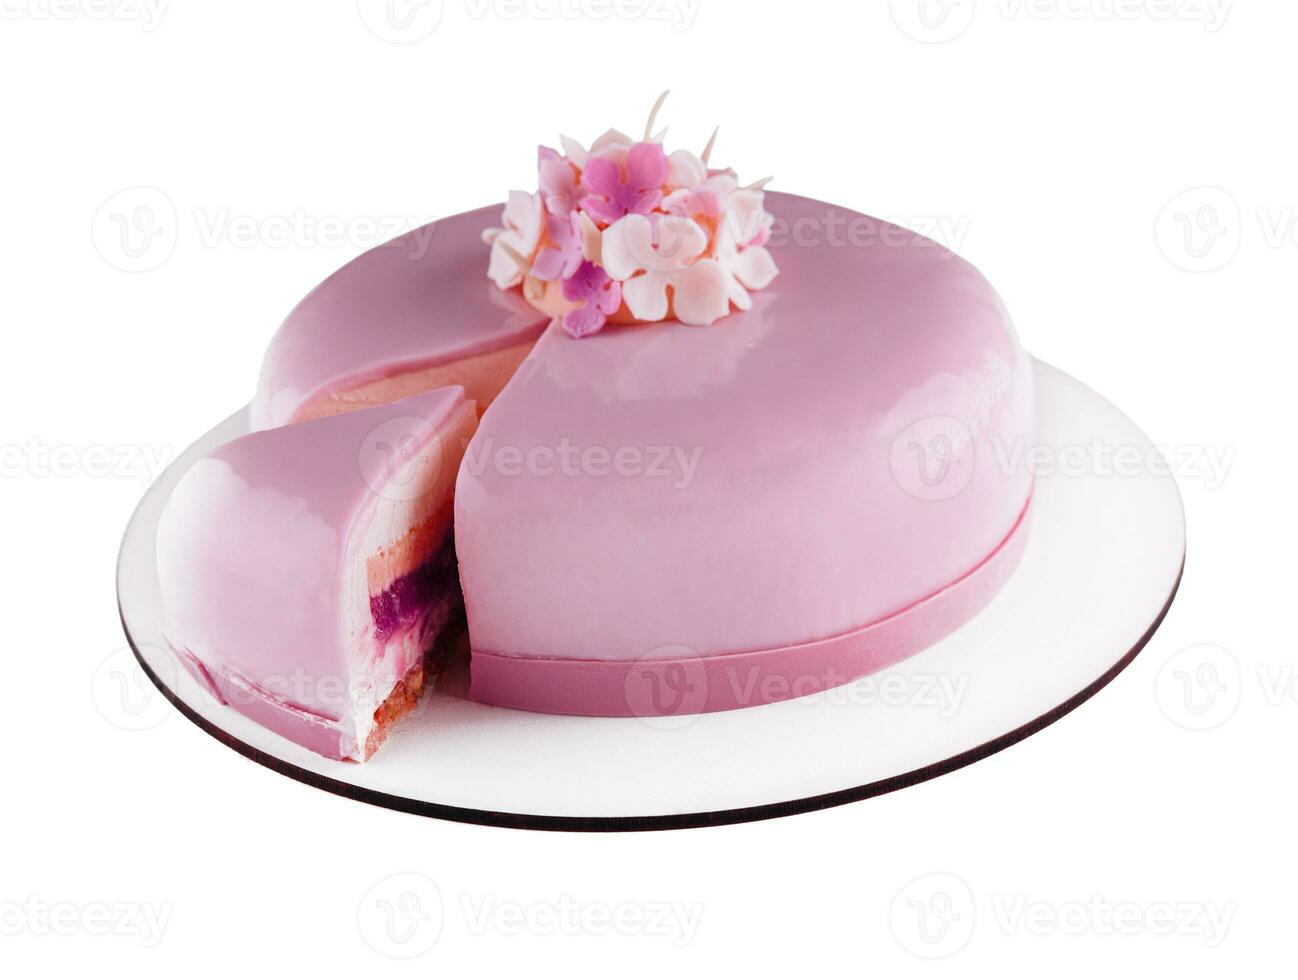 roze mousse taart met spiegel glazuur versierd met bloemen foto